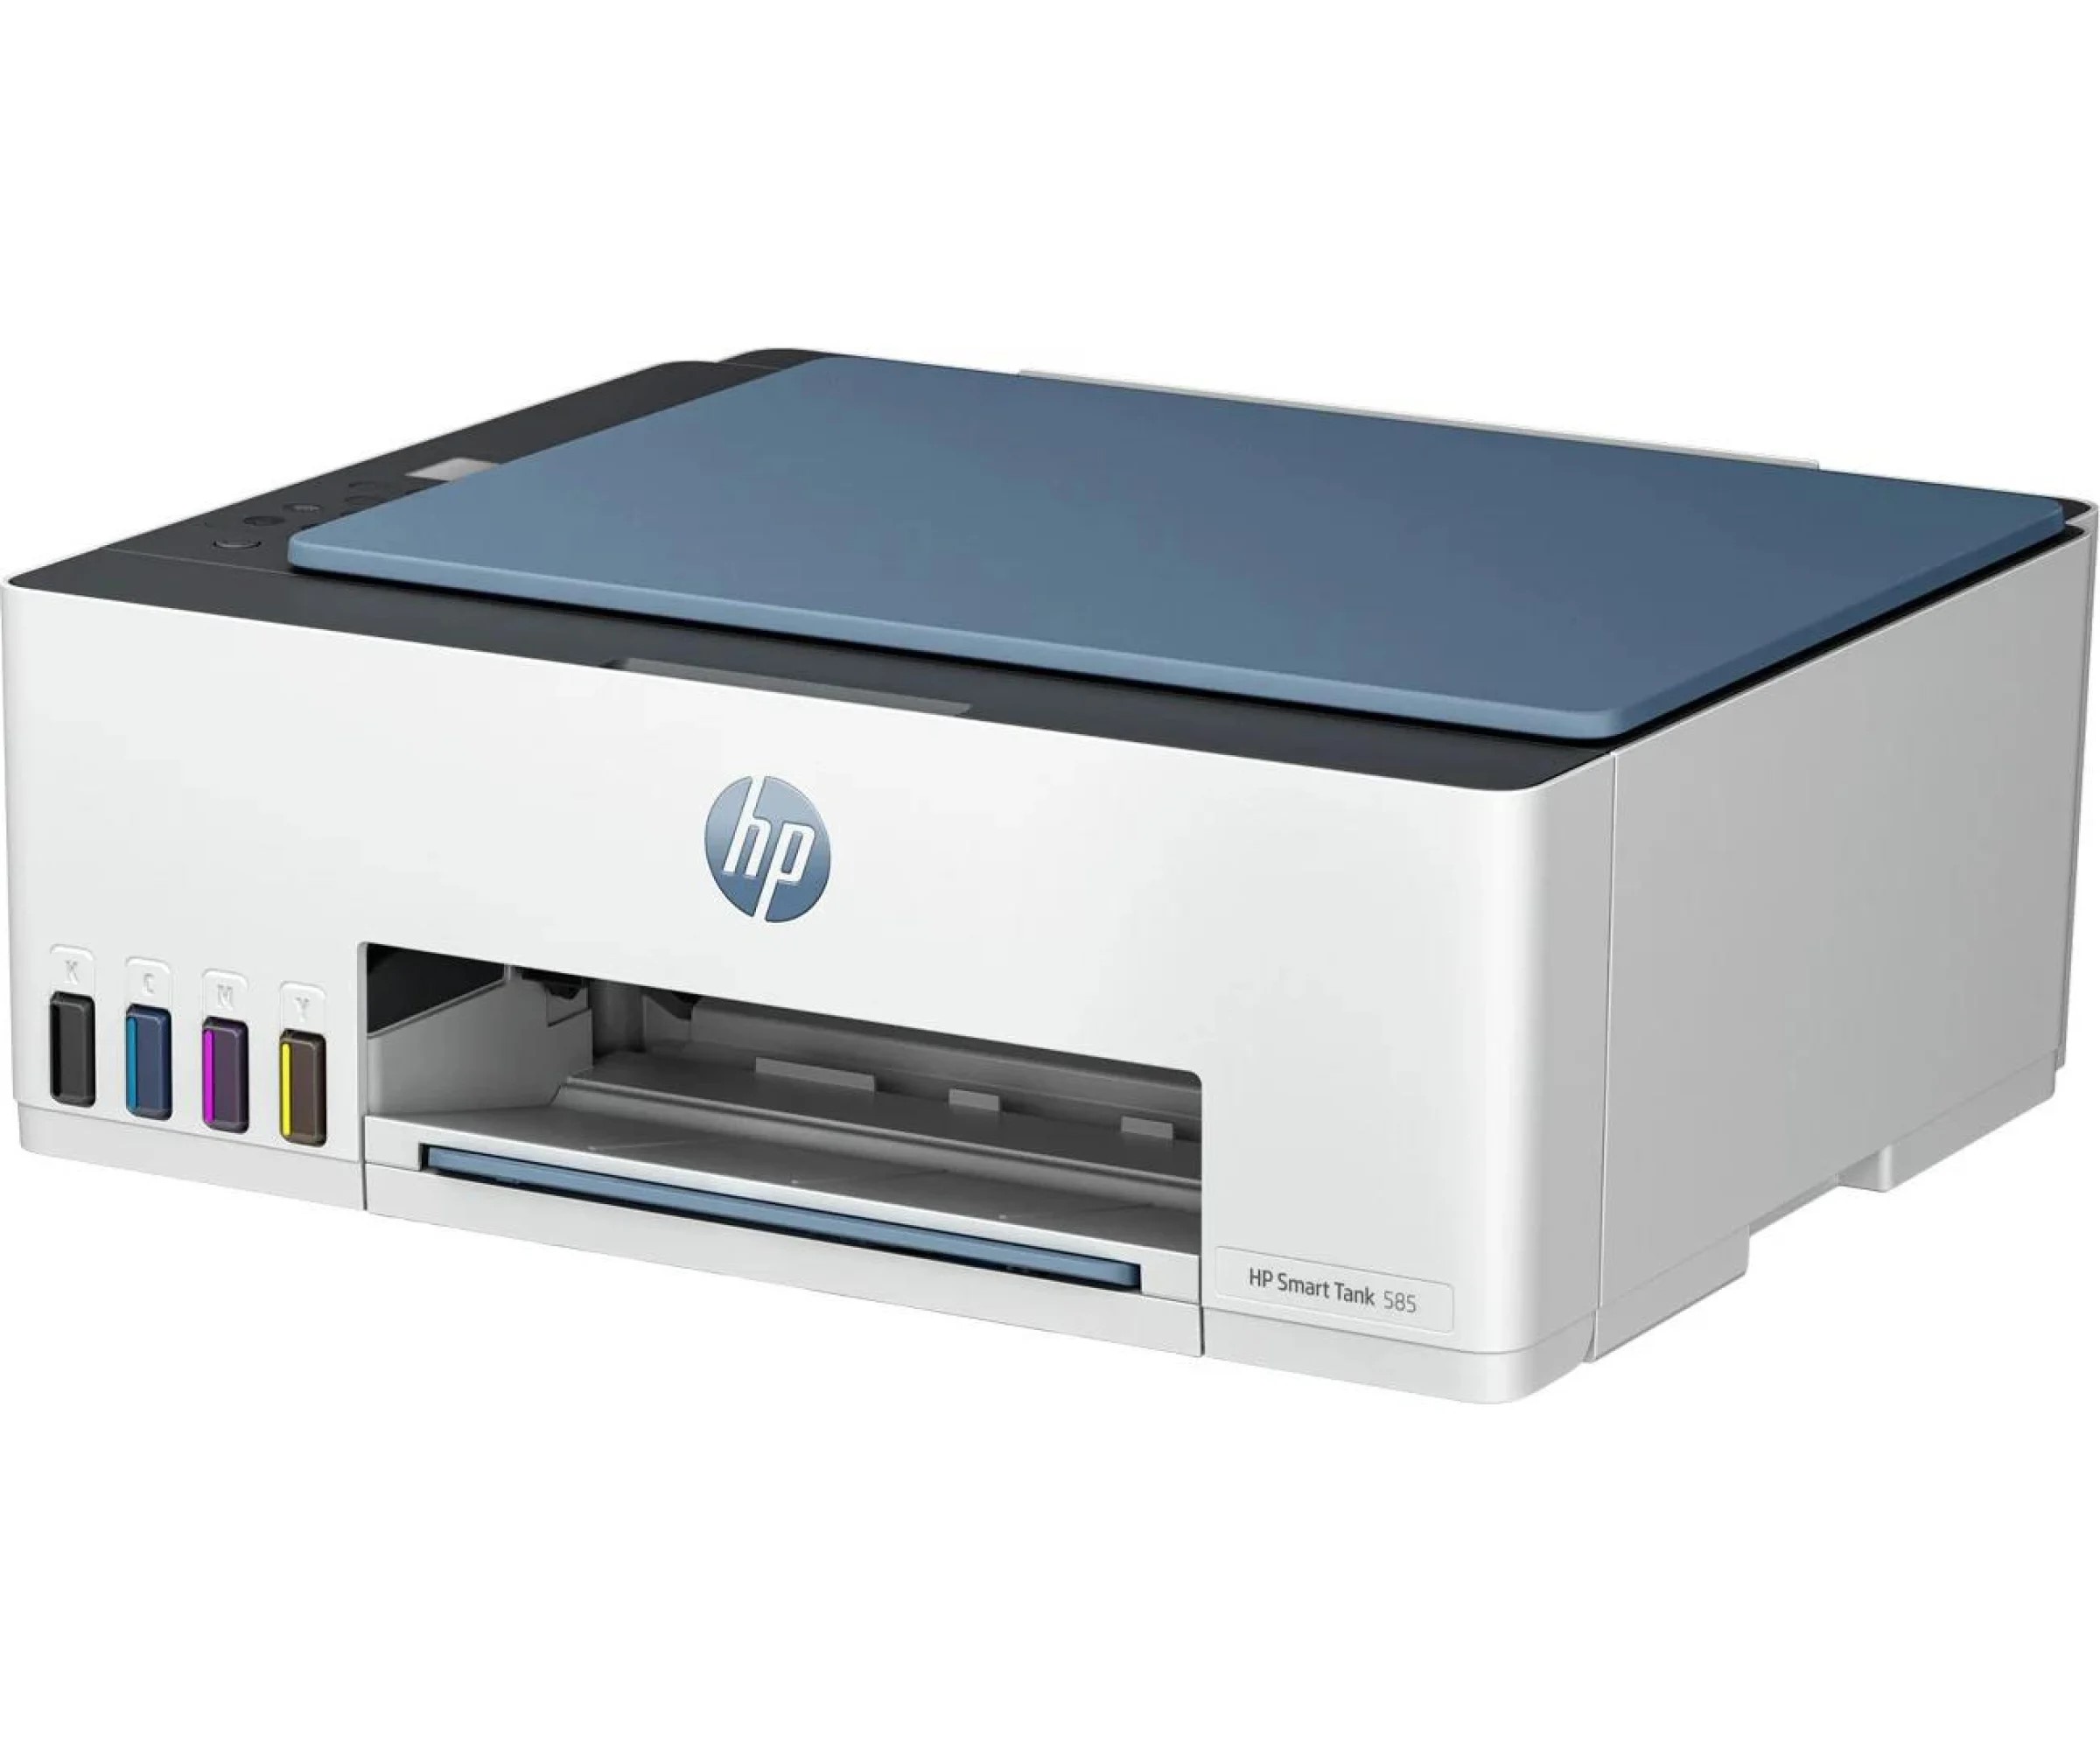 HP LaserJet Pro